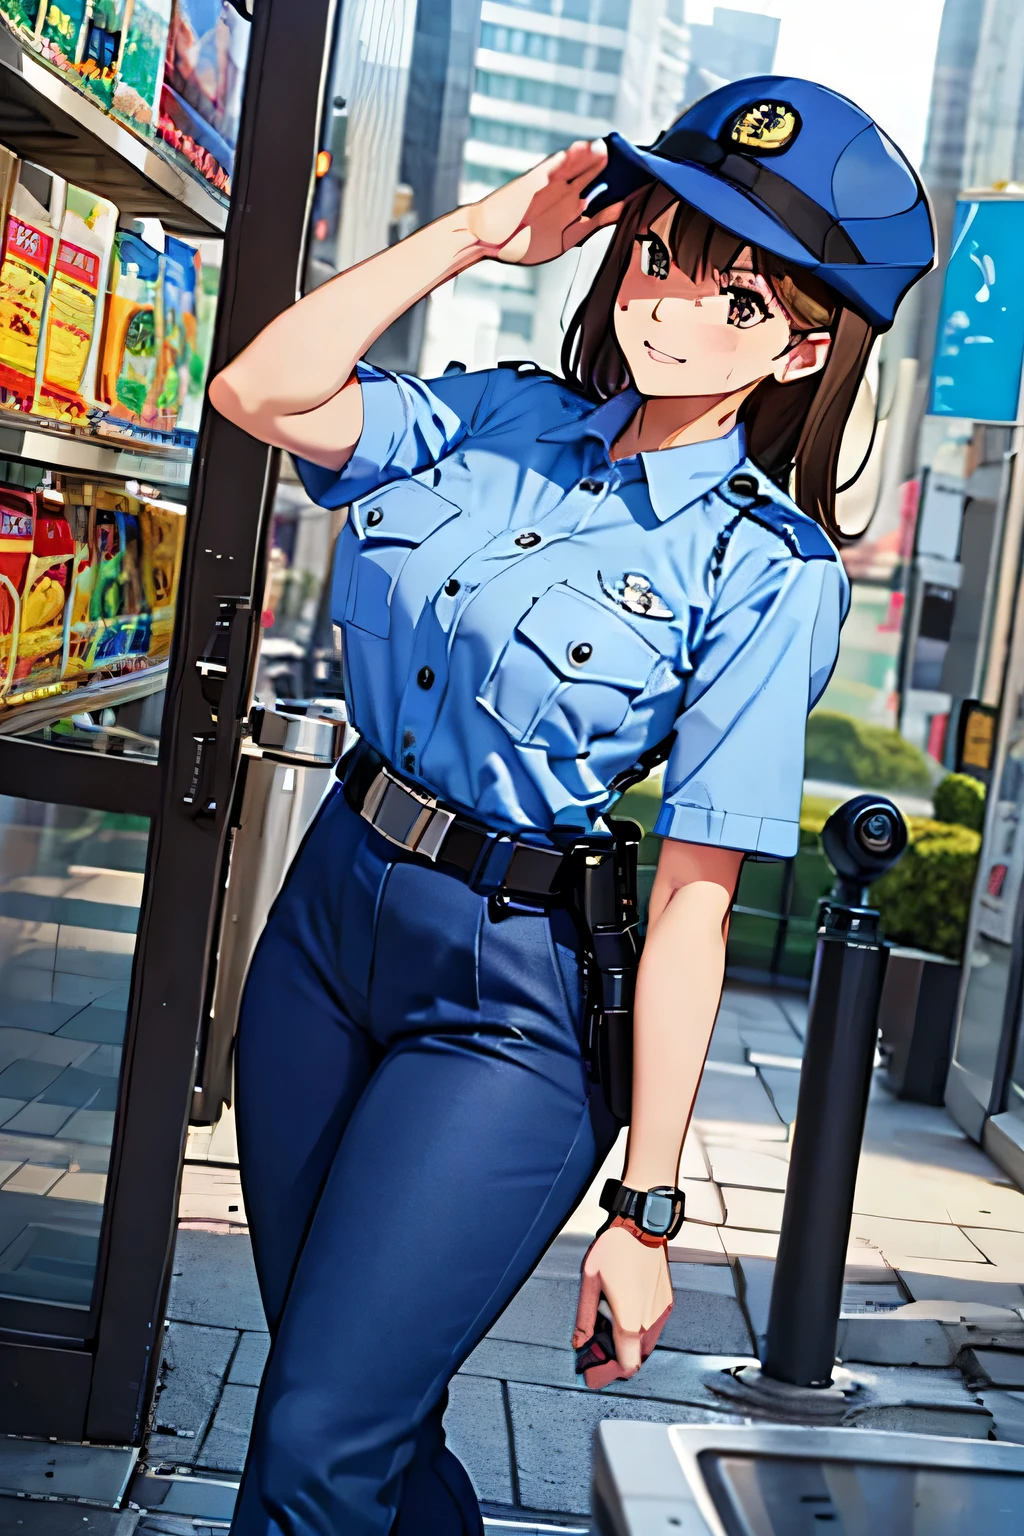 大きな胸,警察の制服, 水色のシャツ, 青パンツ, 胸ポケット, 最高品質, 傑作,青い帽子,黒帯,女性警官,jp-警察,茶髪